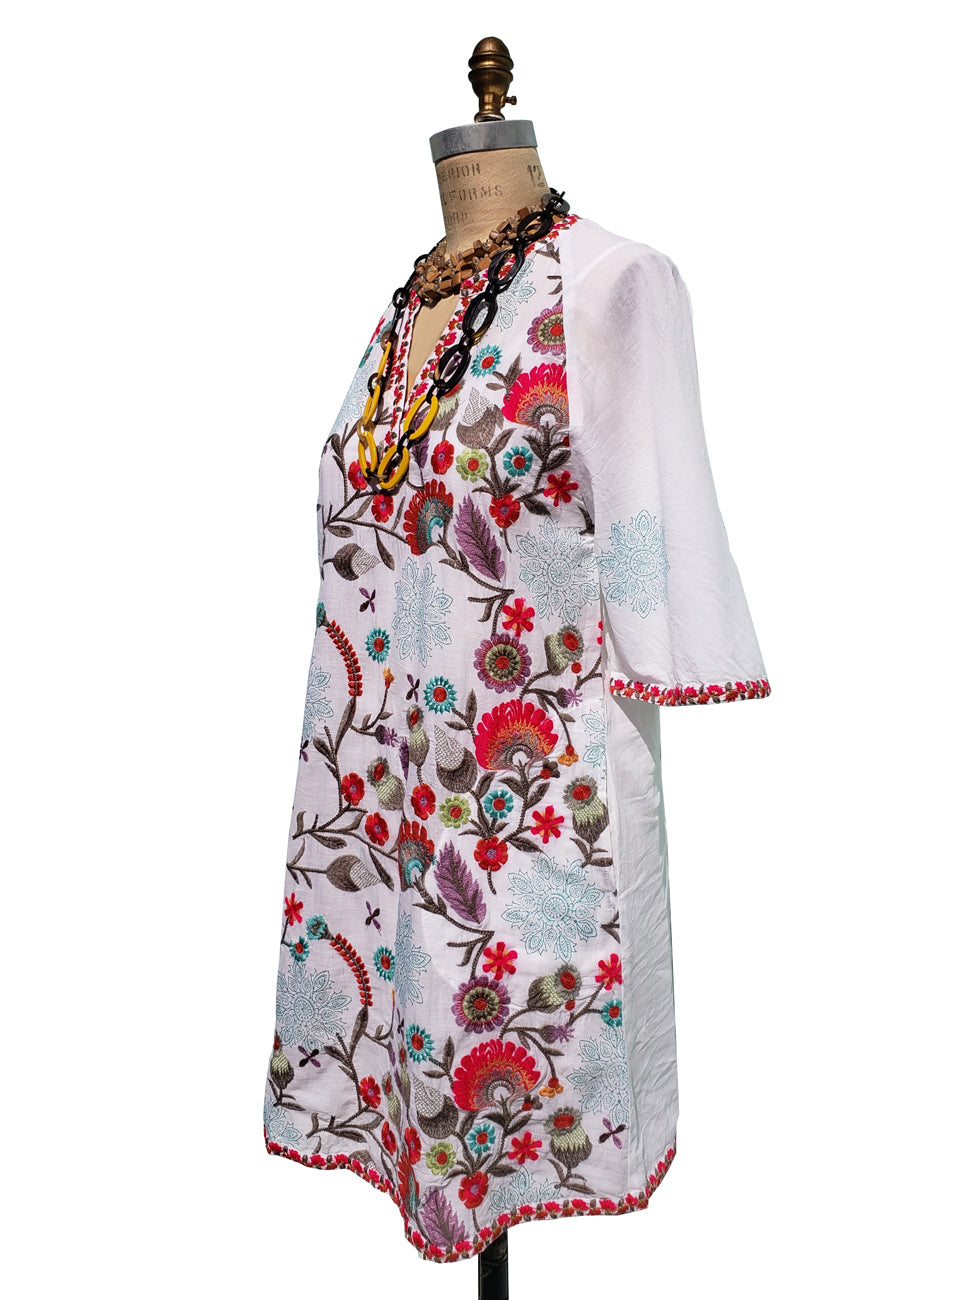 Hand Embroidery Cotton Dress, Boho Beach Dress, Swim Cover Up | eBay